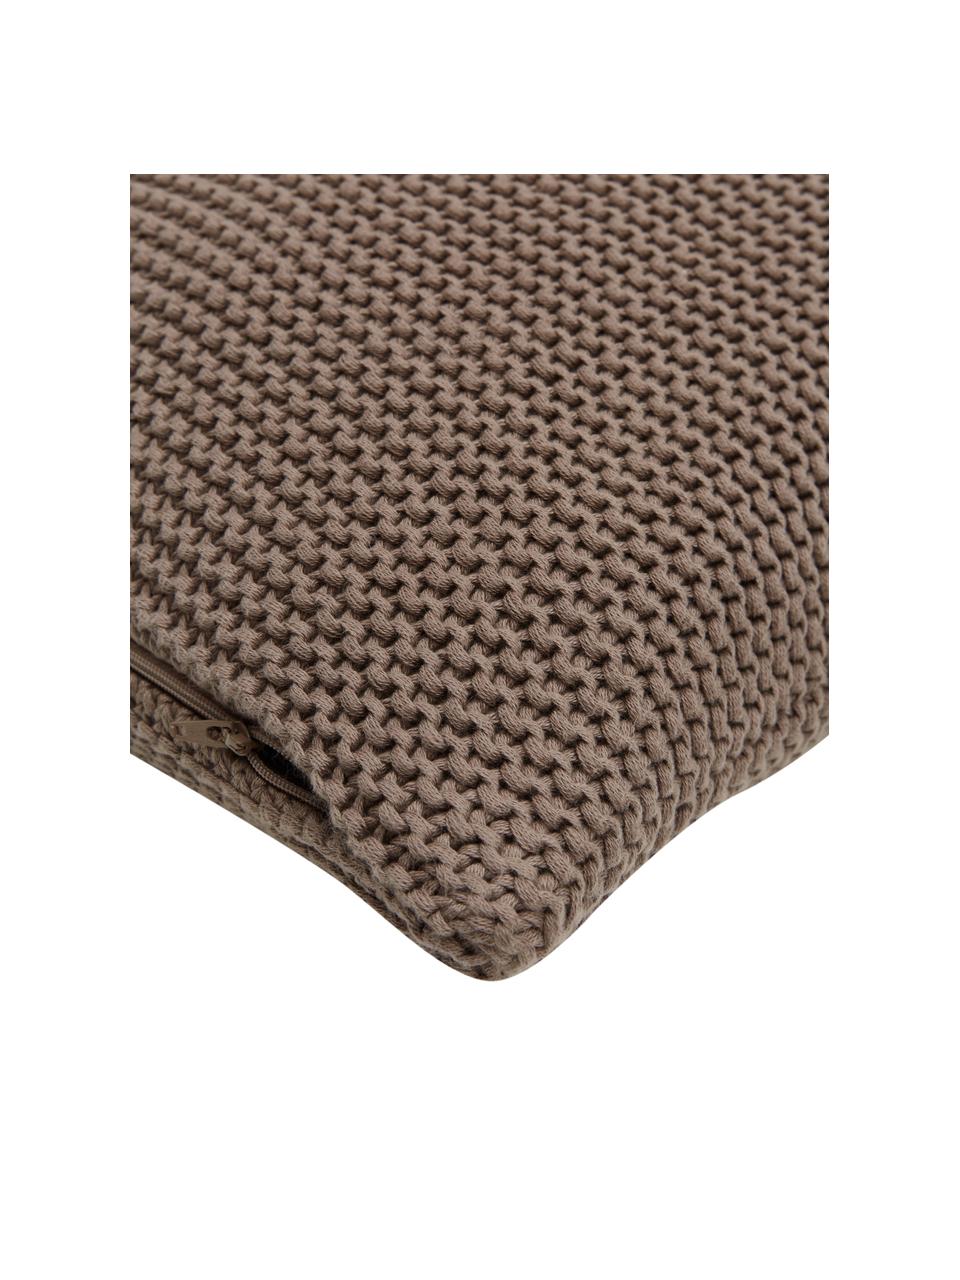 Federa arredo a maglia in cotone biologico marrone chiaro Adalyn, 100% cotone biologico, certificato GOTS, Marrone, Larg. 30 x Lung. 50 cm